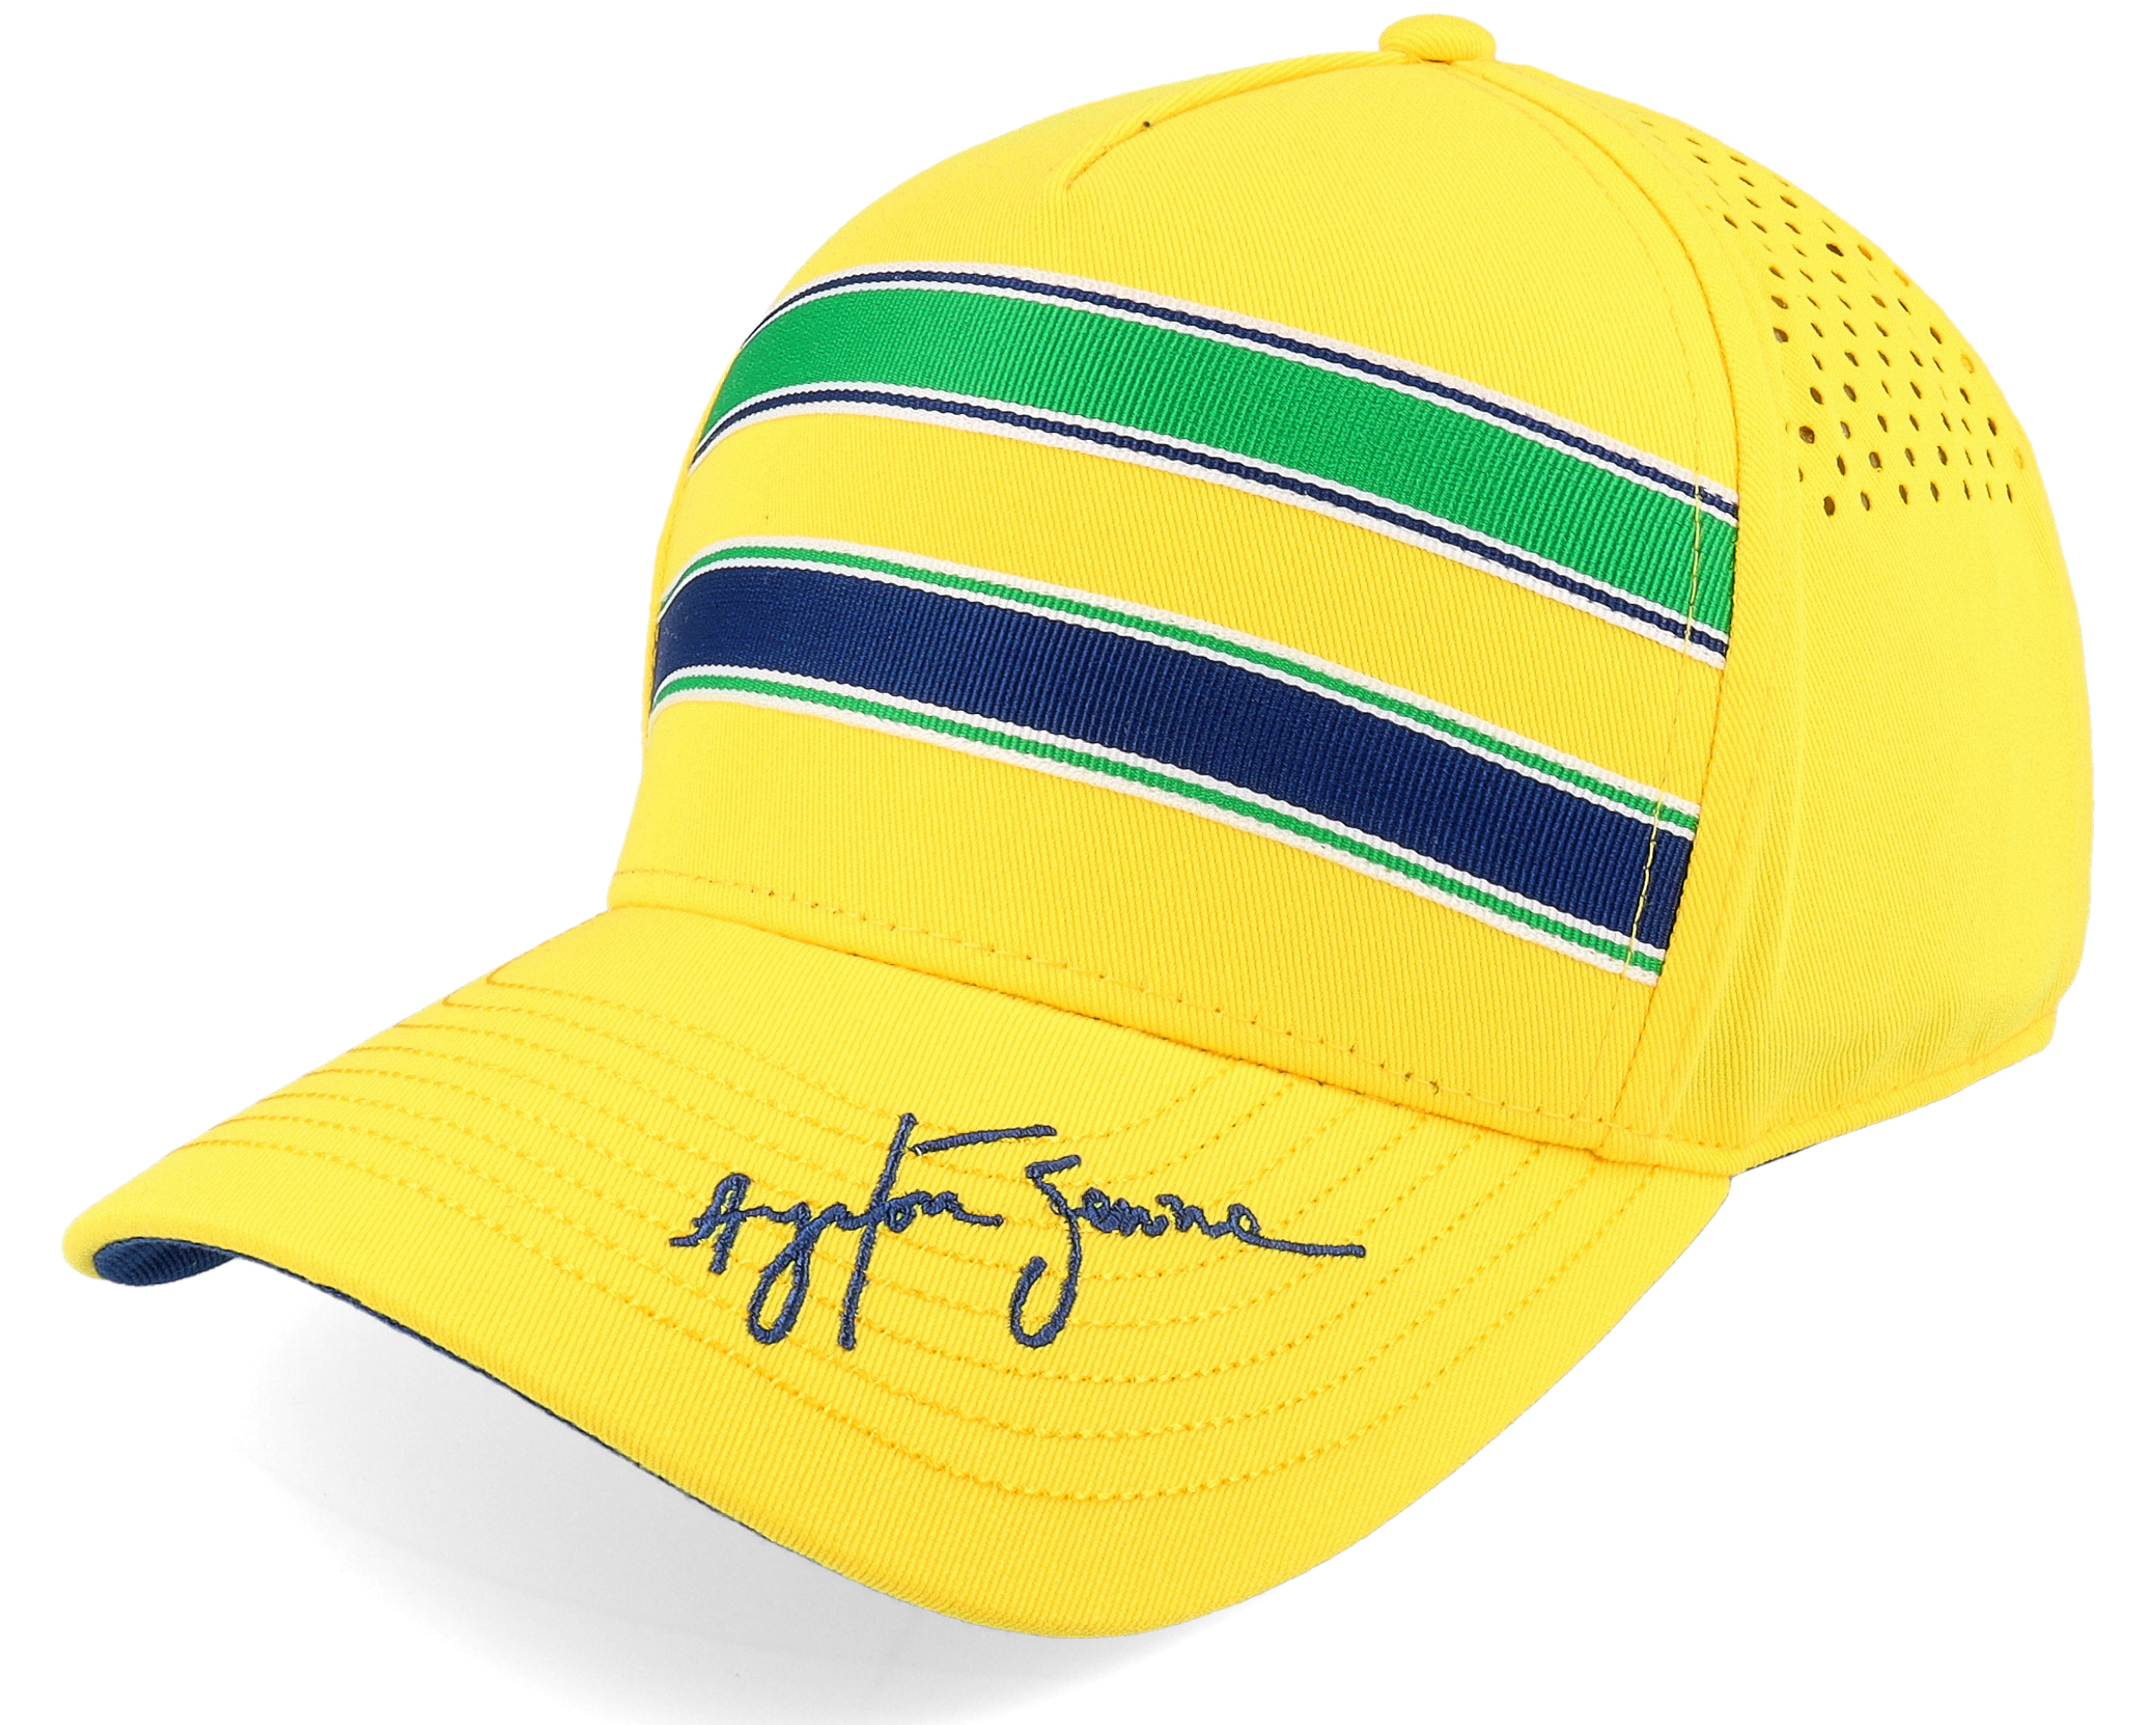 Senna Stripe Yellow Adjustable Ayrton Senna Cap Hatstoreat